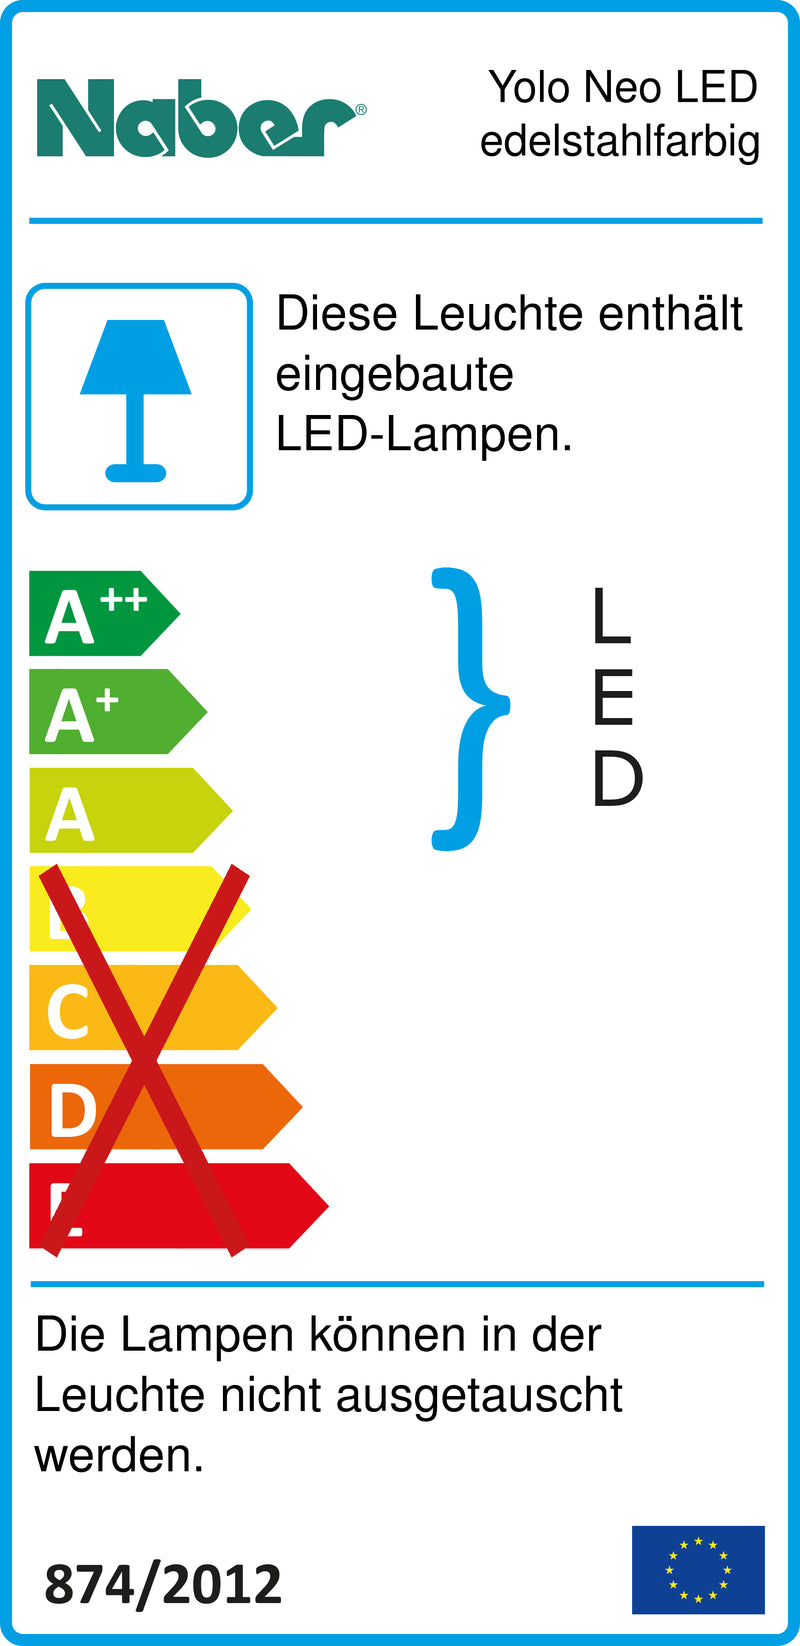 E-Label zu Zeichnung zu Yolo Neo LED edelstahlfarbig als Variante Set-3, 3000 K warmweiß von Naber GmbH in der Kategorie Lichttechnik in Österreich auf conceptshop.at